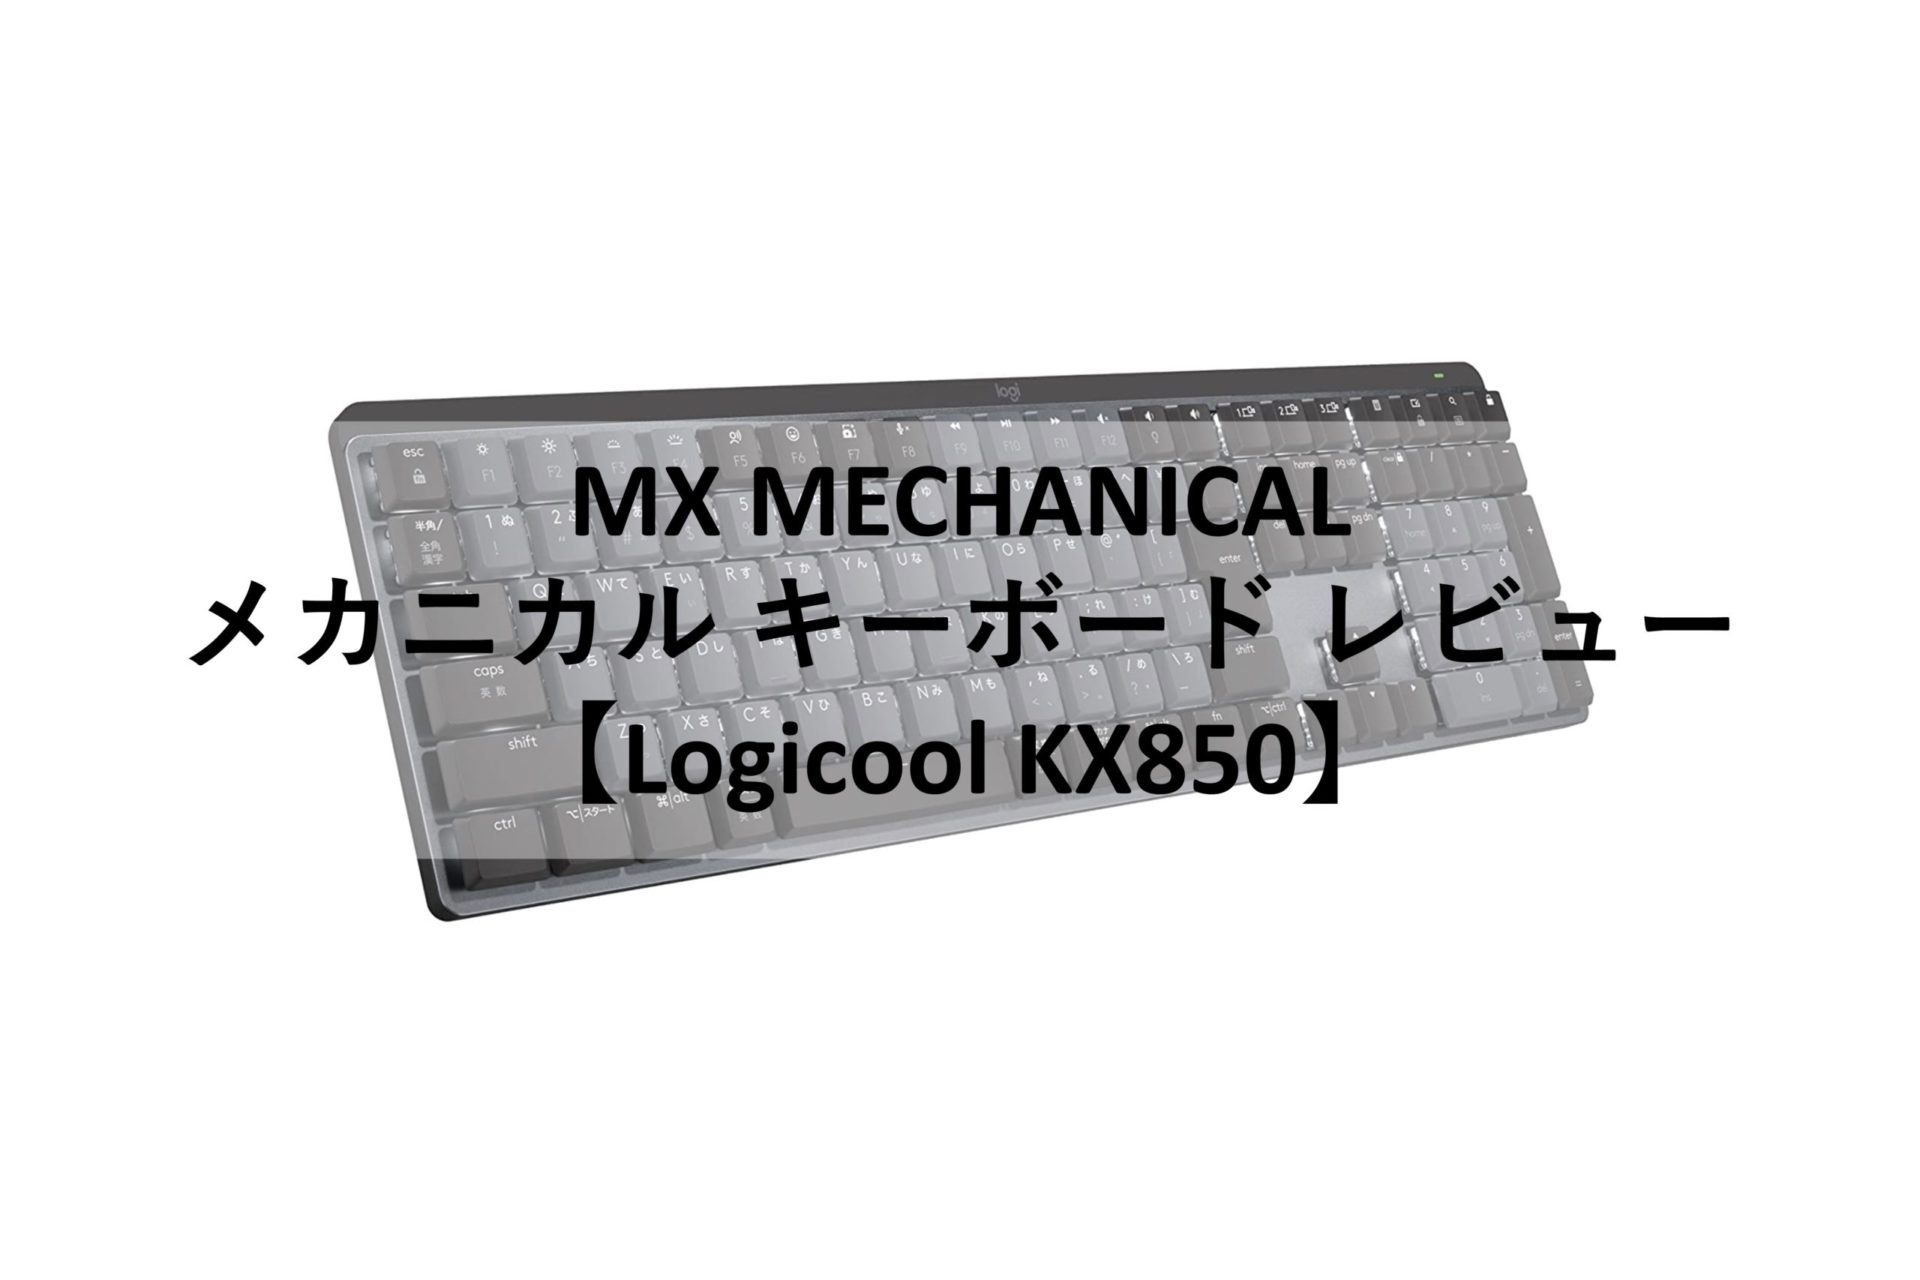 Logicool MX MECHANICAL】ロジクール MXシリーズ メカニカル 